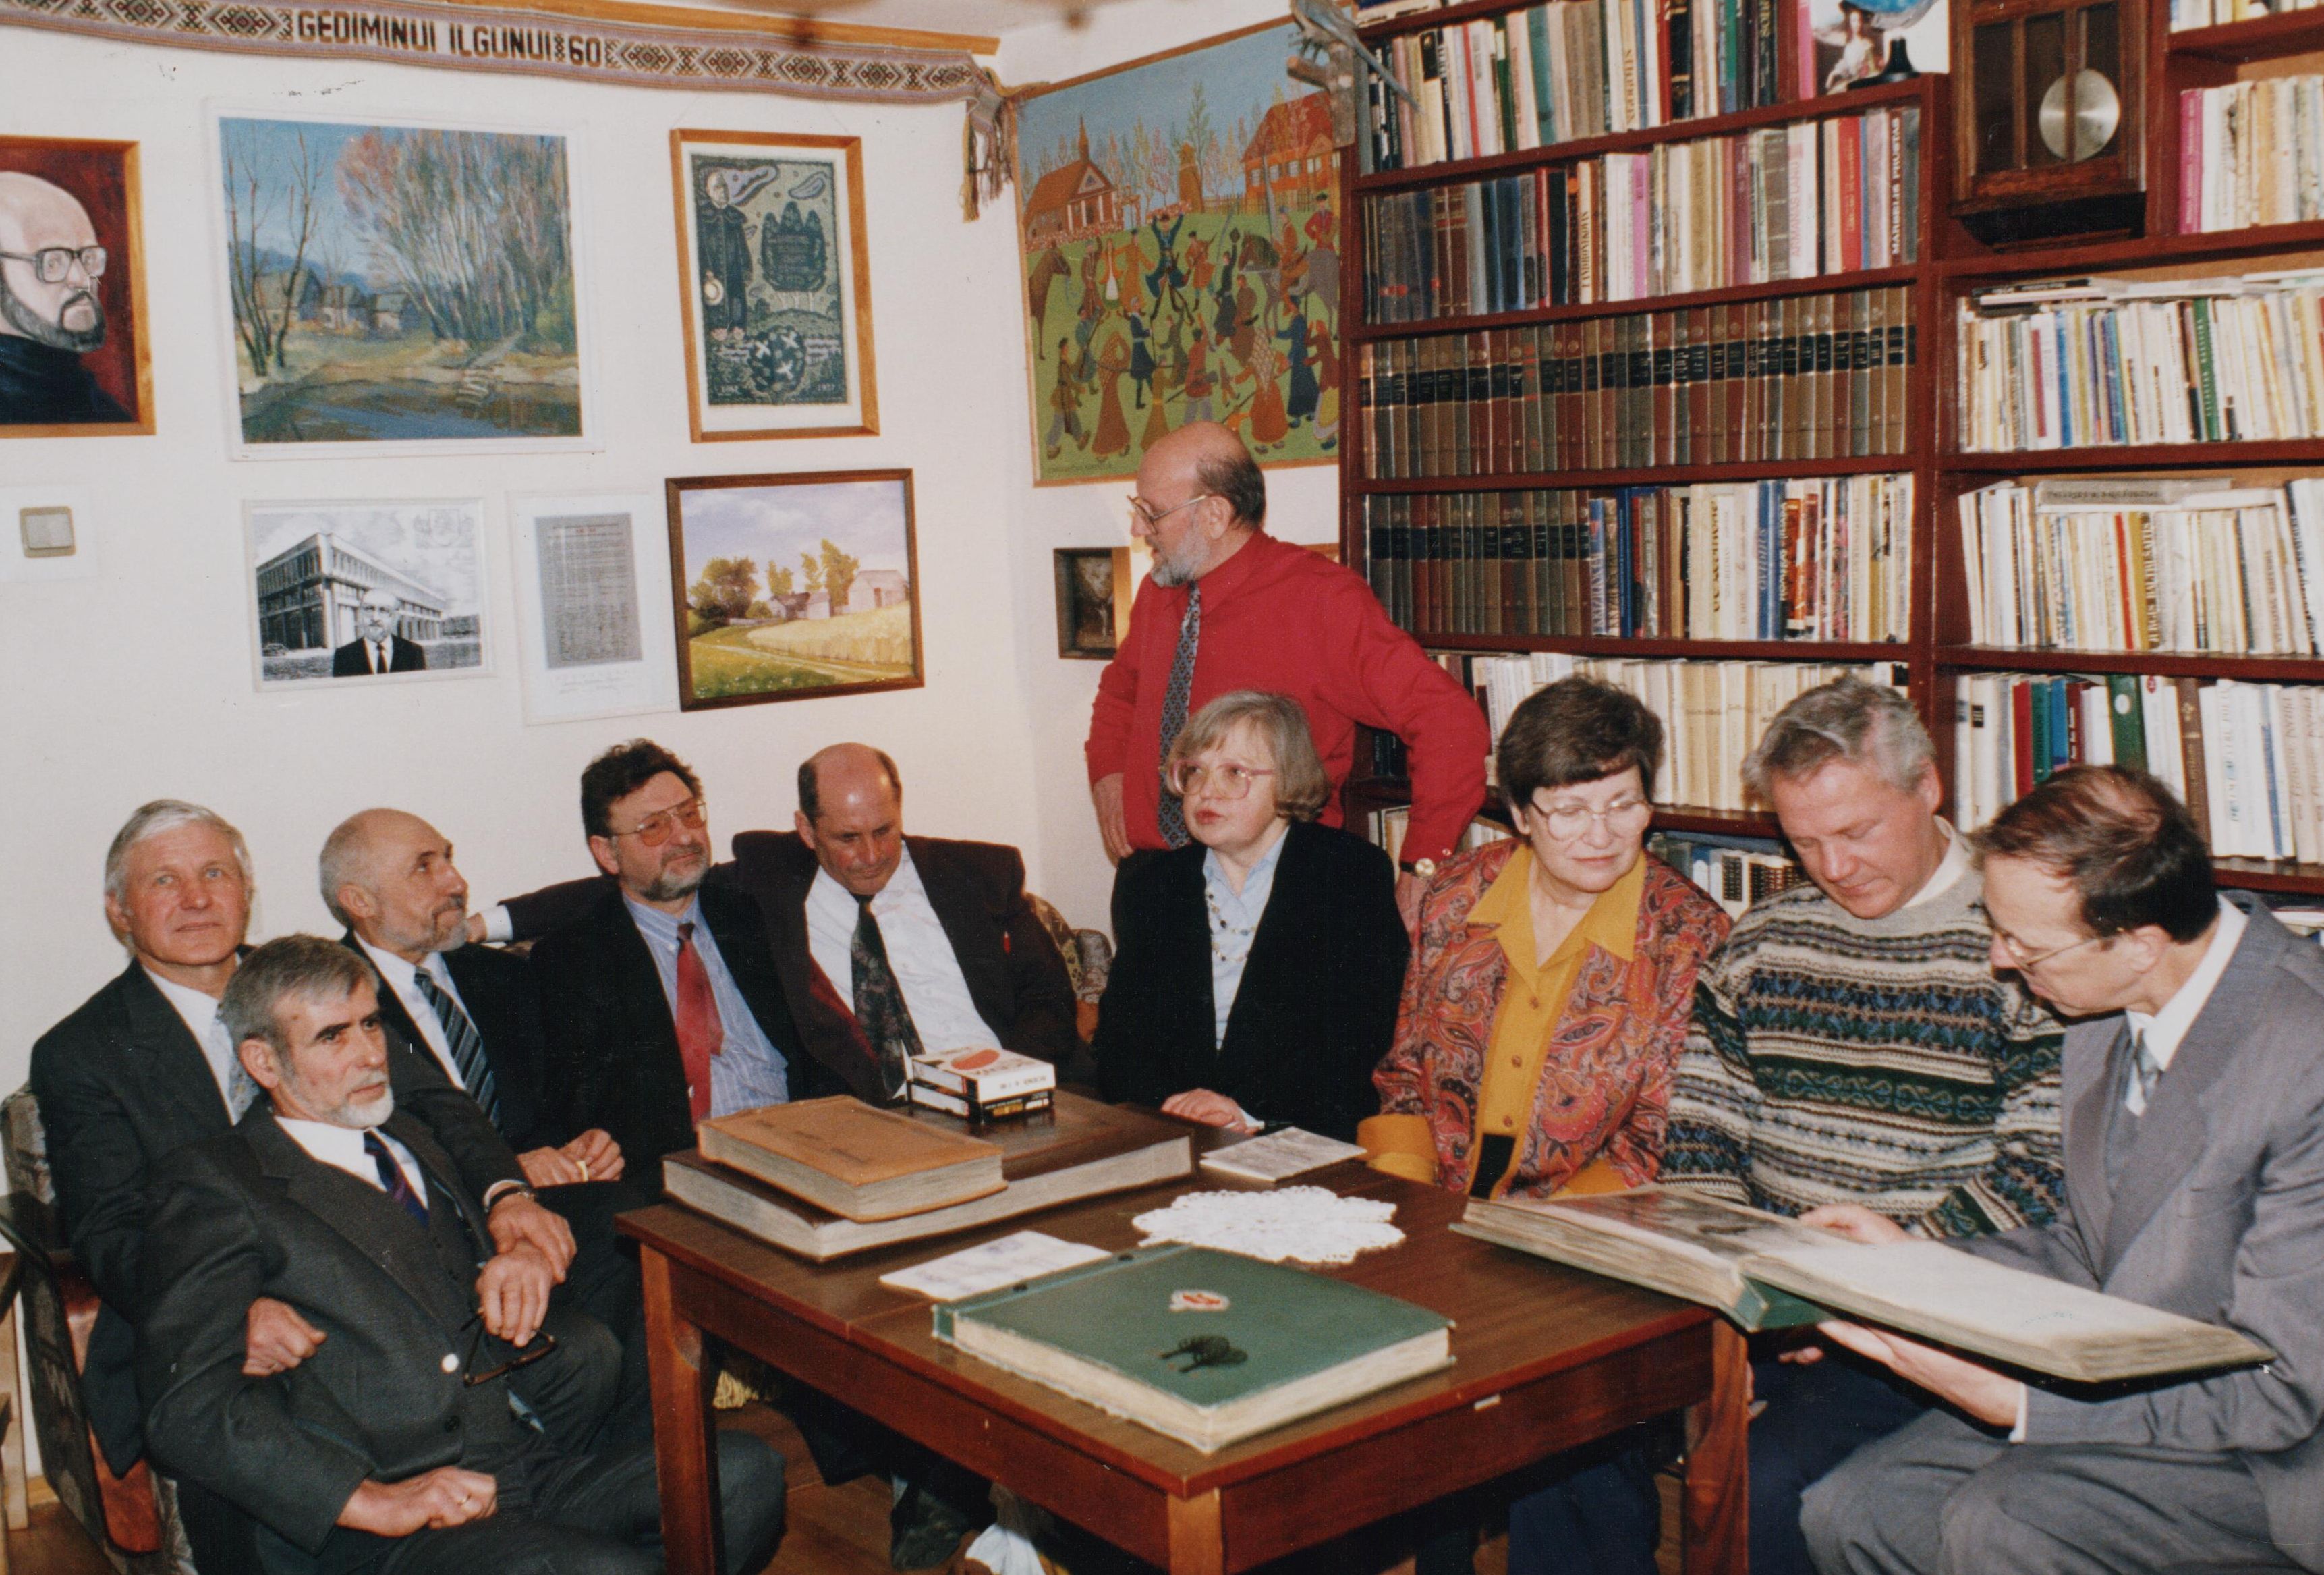 1998 m. Ilgūnų namuose po 30 metų susitiko 1968-ųjų žygio-ekspedicijos „Aplink Tarybų Sąjungą“ dalyviai. Iš kairės: Gintautas Maurutis, Vytautas Straigys, Jonas Burkvydas Kaluškevičius, Audrius Mikšas, Mečys Bortkevičius, Žibutė Uzdonaitė-Gudelienė, Gediminas Ilgūnas, Birutė Ilgūnienė, Jonas Šimkonis, Gediminas Račkauskas.